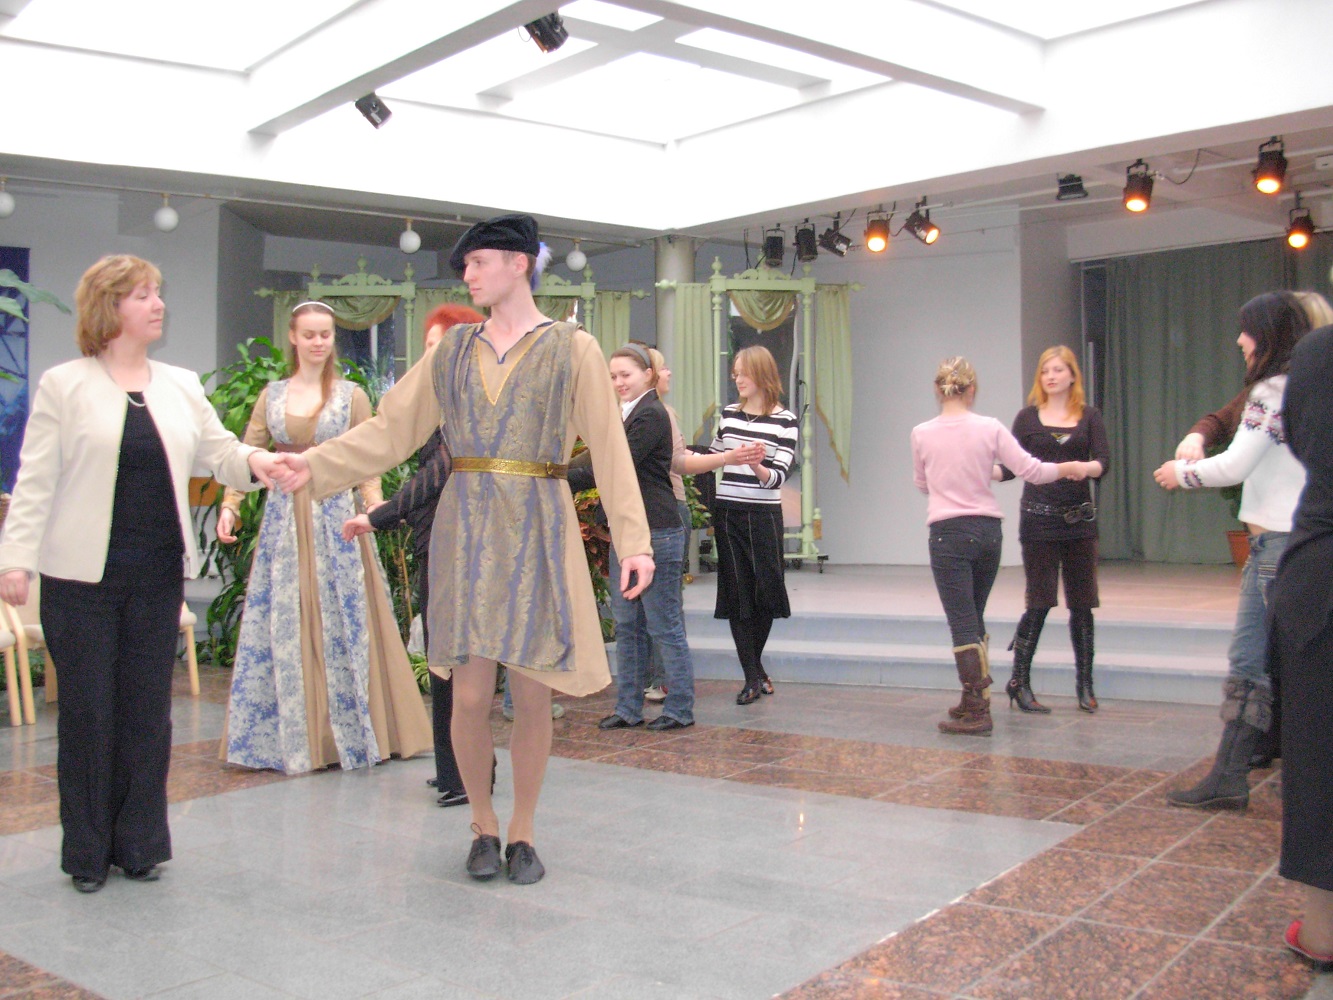 Как танцевали жители Старого Ревеля. Февраль 2011 г., Зимний сад Национальной оперы «Эстония».